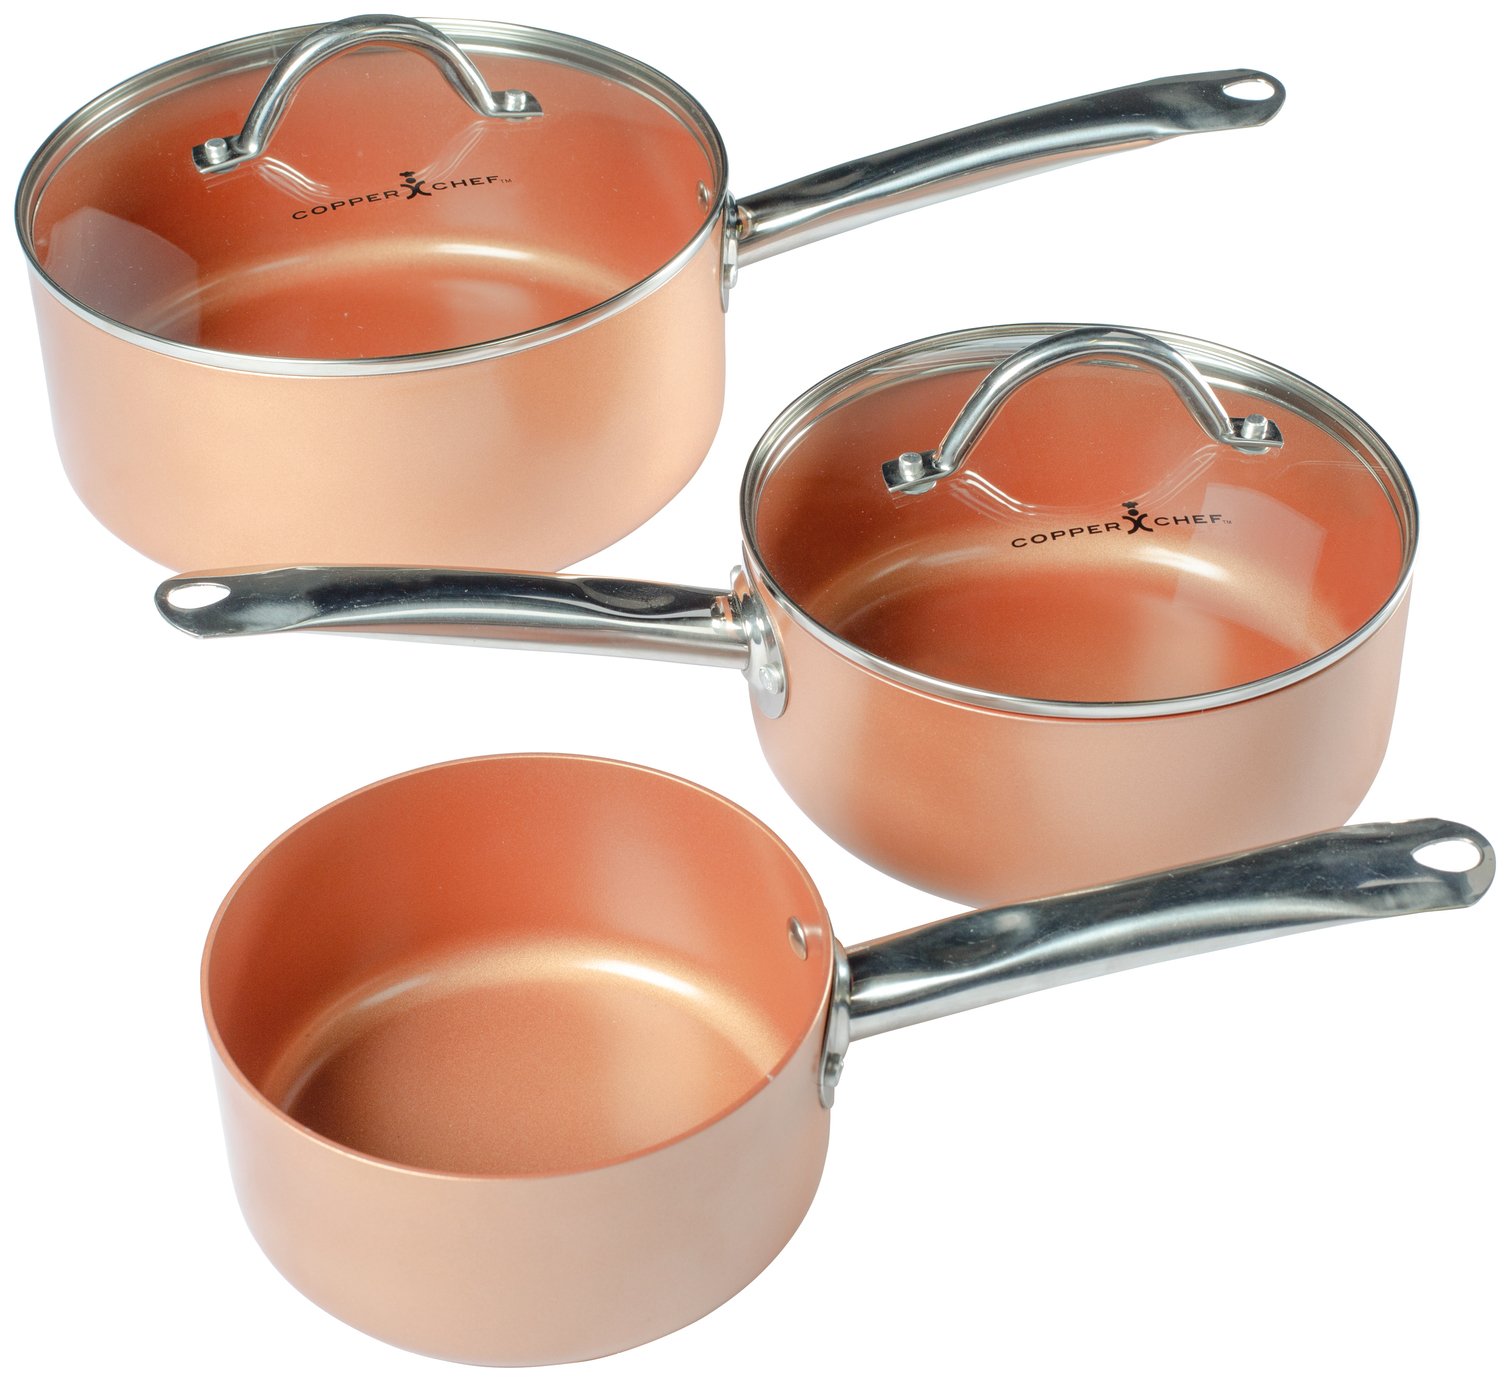 Copper Chef 3 Piece Saucepan Set review